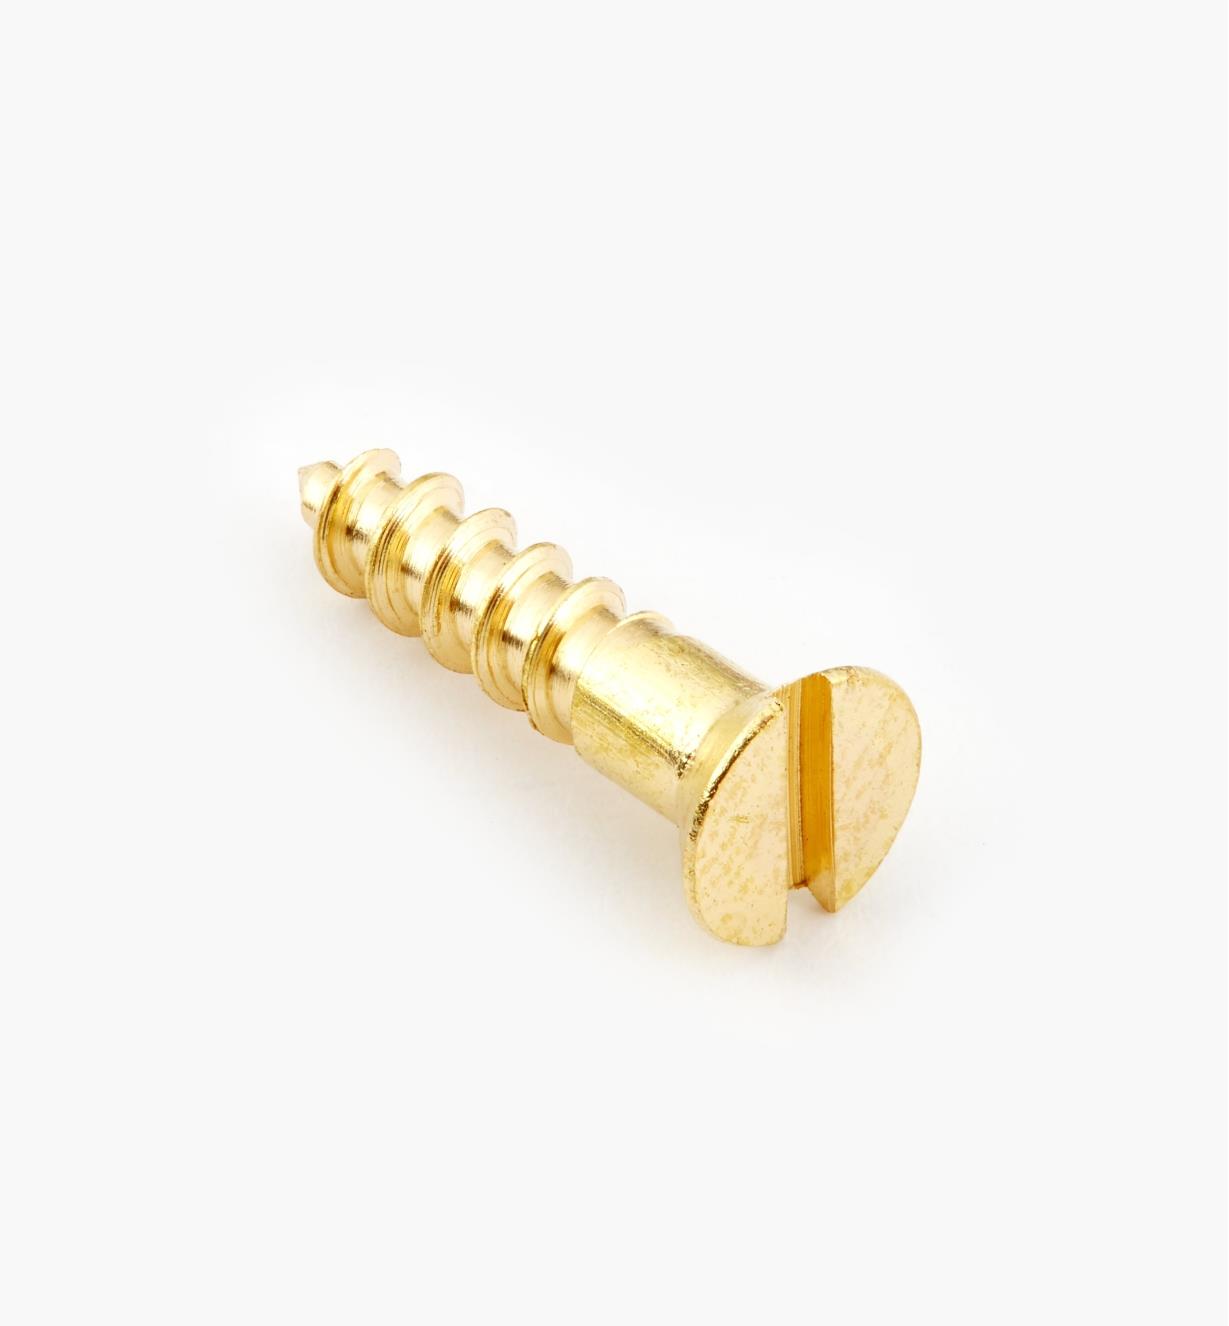 91Z0604 - #6, 5/8" Flat Brass Screws, pkg. of 100